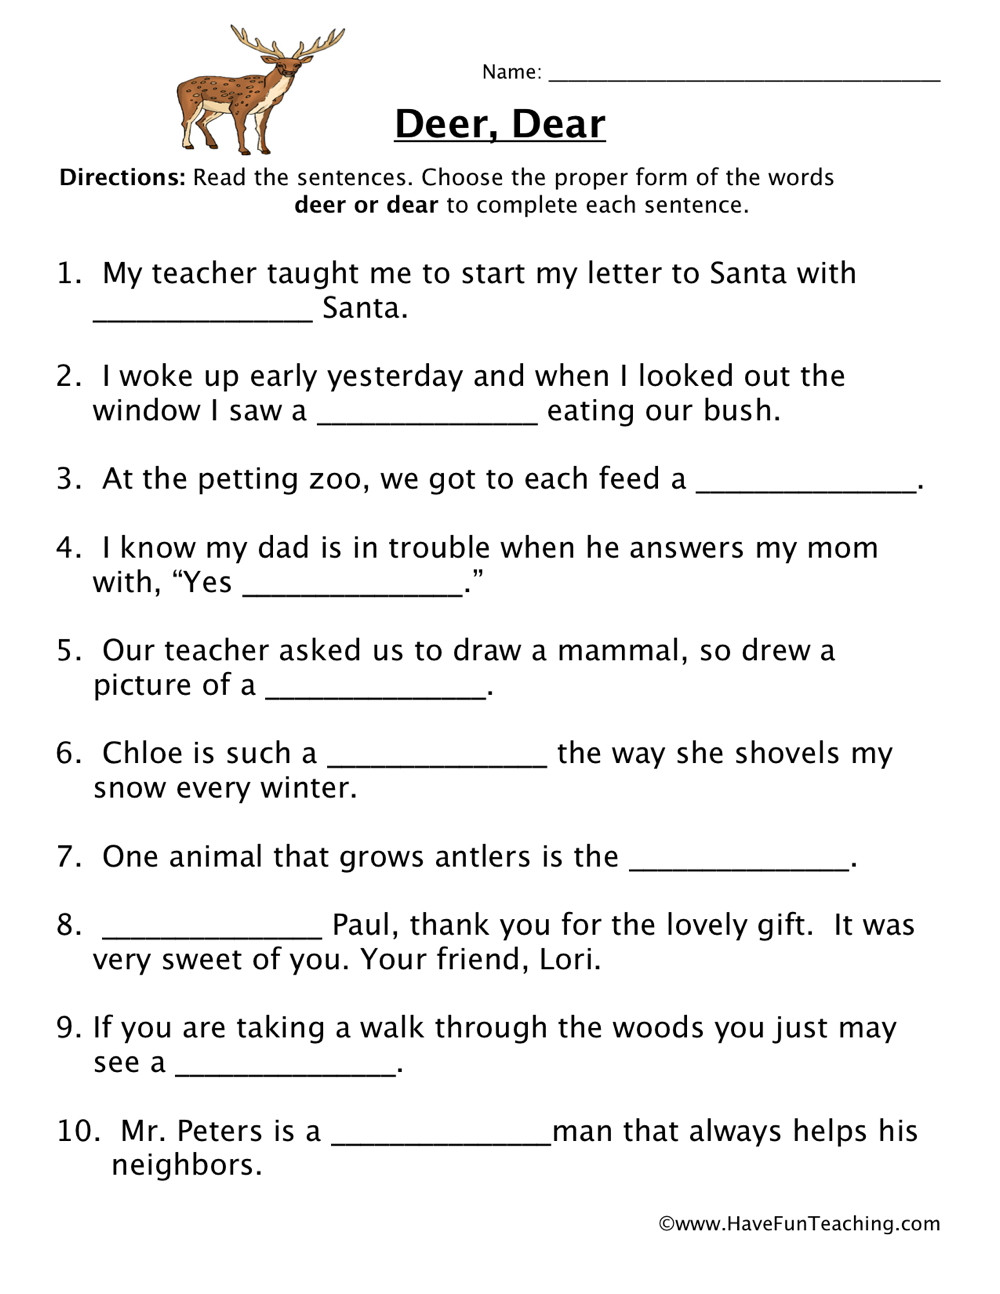 Homophone Worksheet 4th Grade Deer Dear Homophones Worksheet